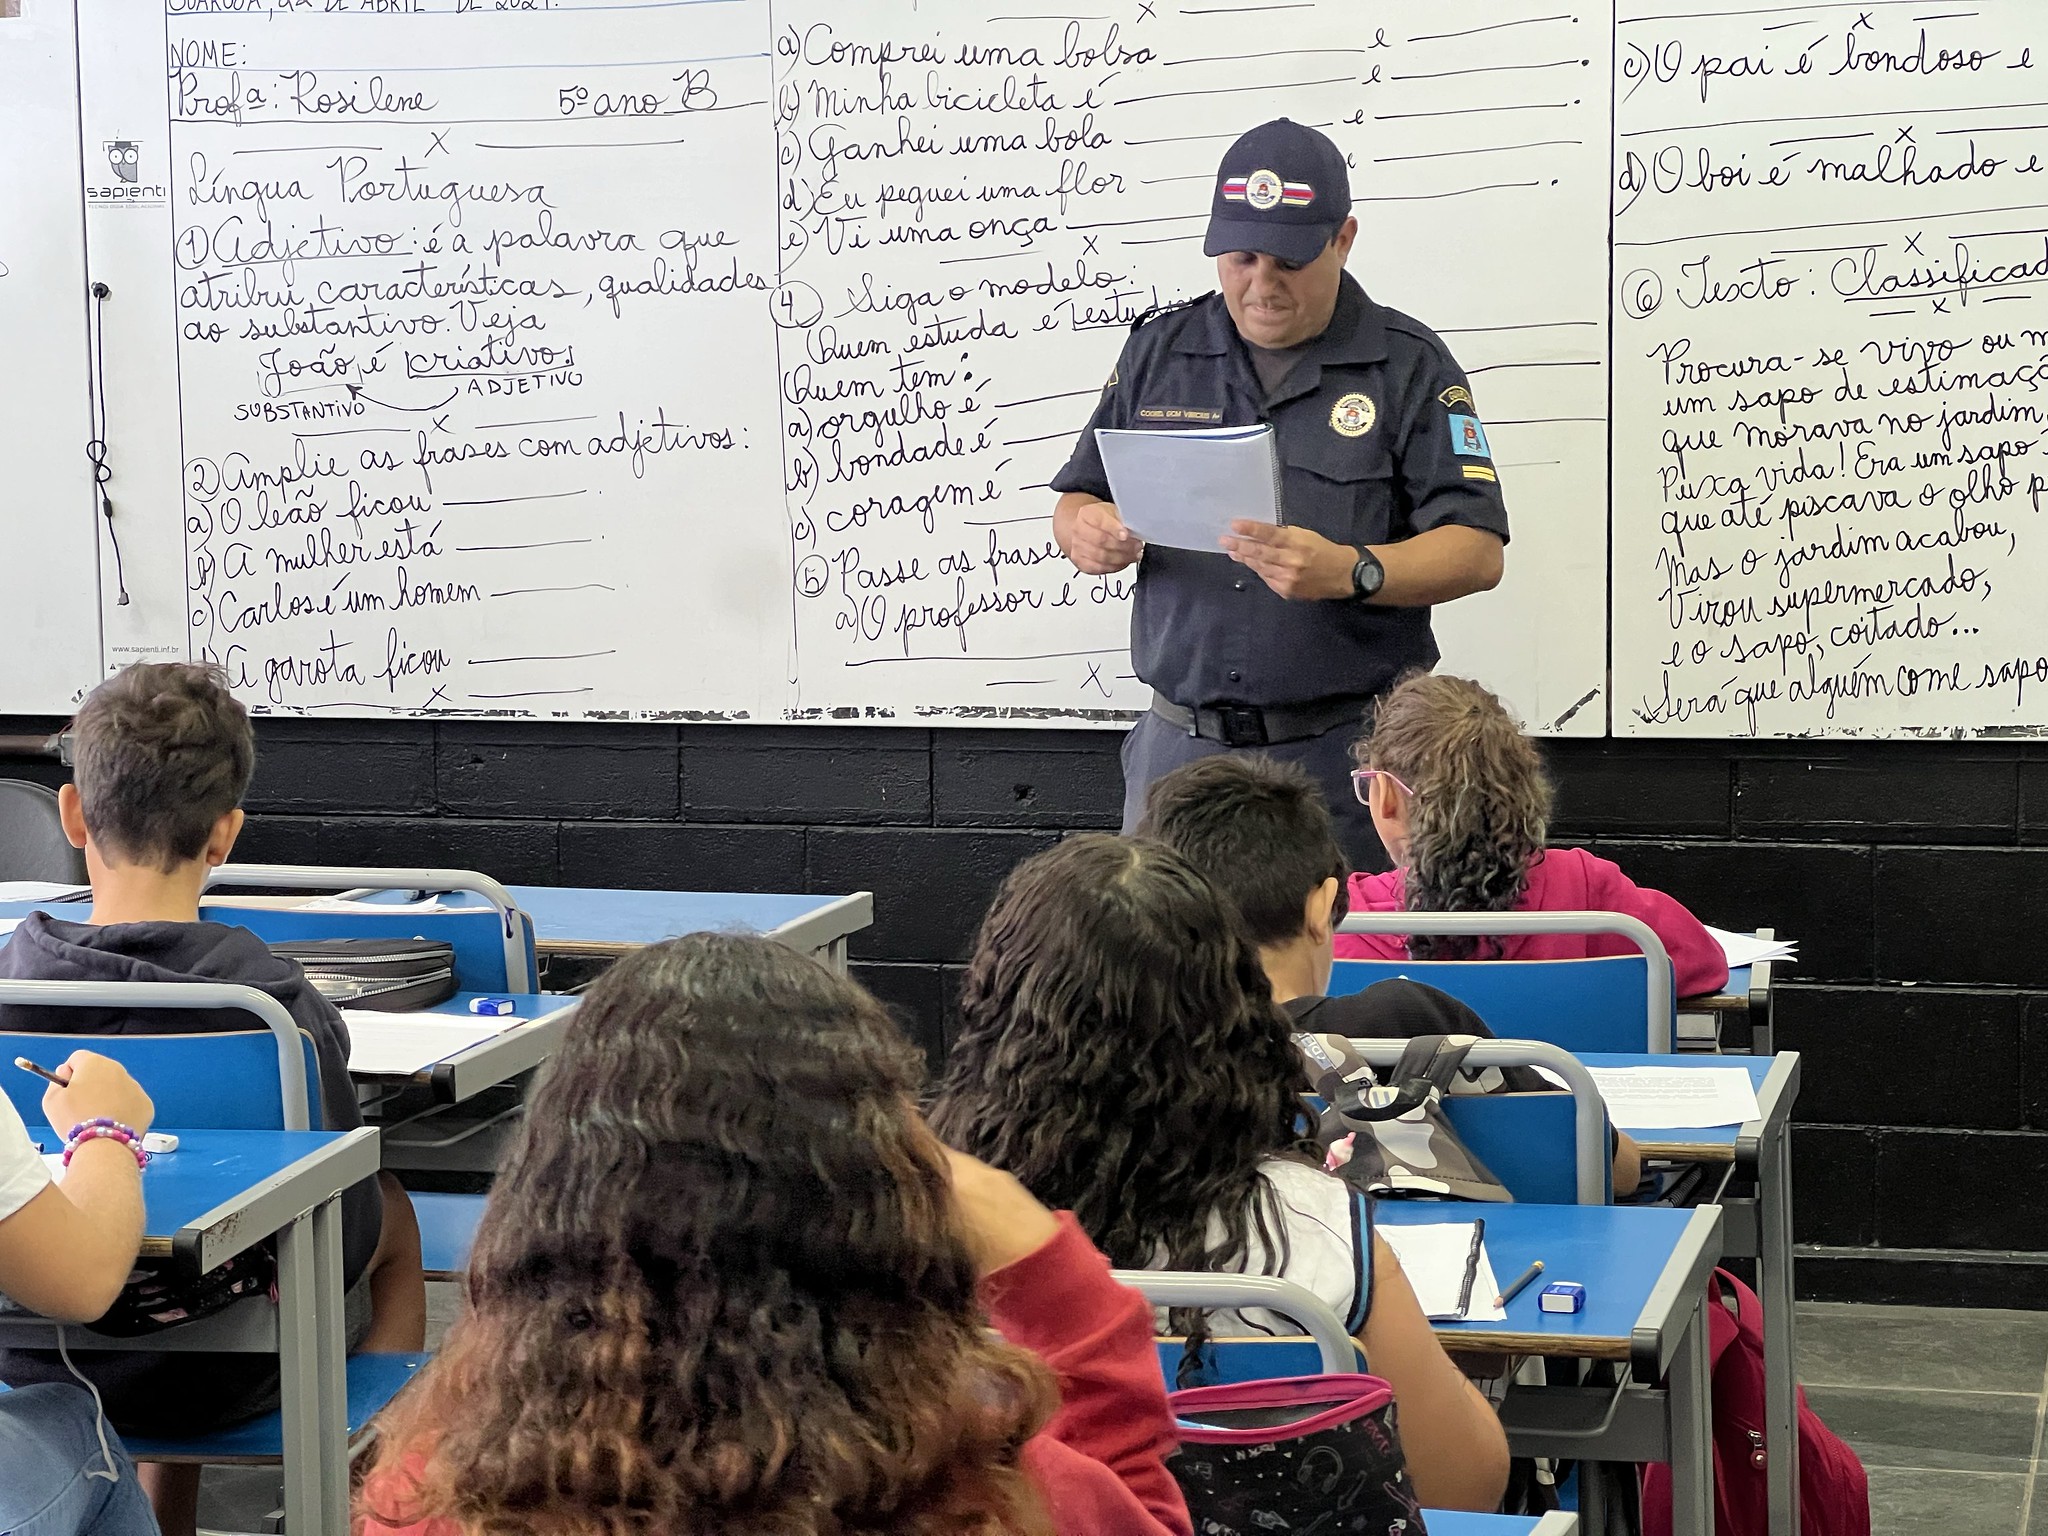 GCM de Guarujá forma estudantes em prevenção ao bullying, drogas e violência